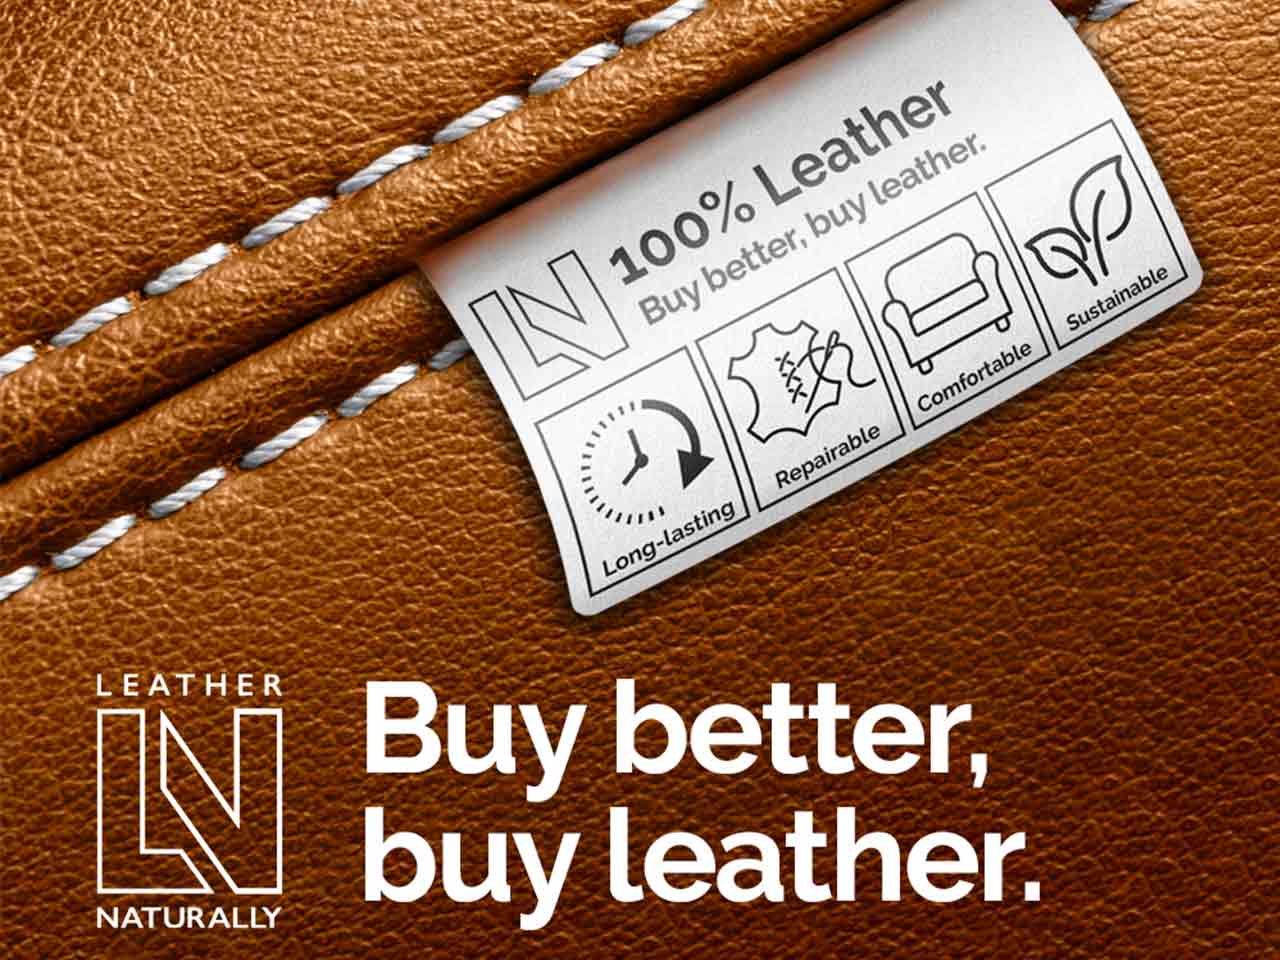 Conseil National du Cuir et Leather Naturally, deux organismes au service de la filière cuir - Leather Fashion Design (LFD)